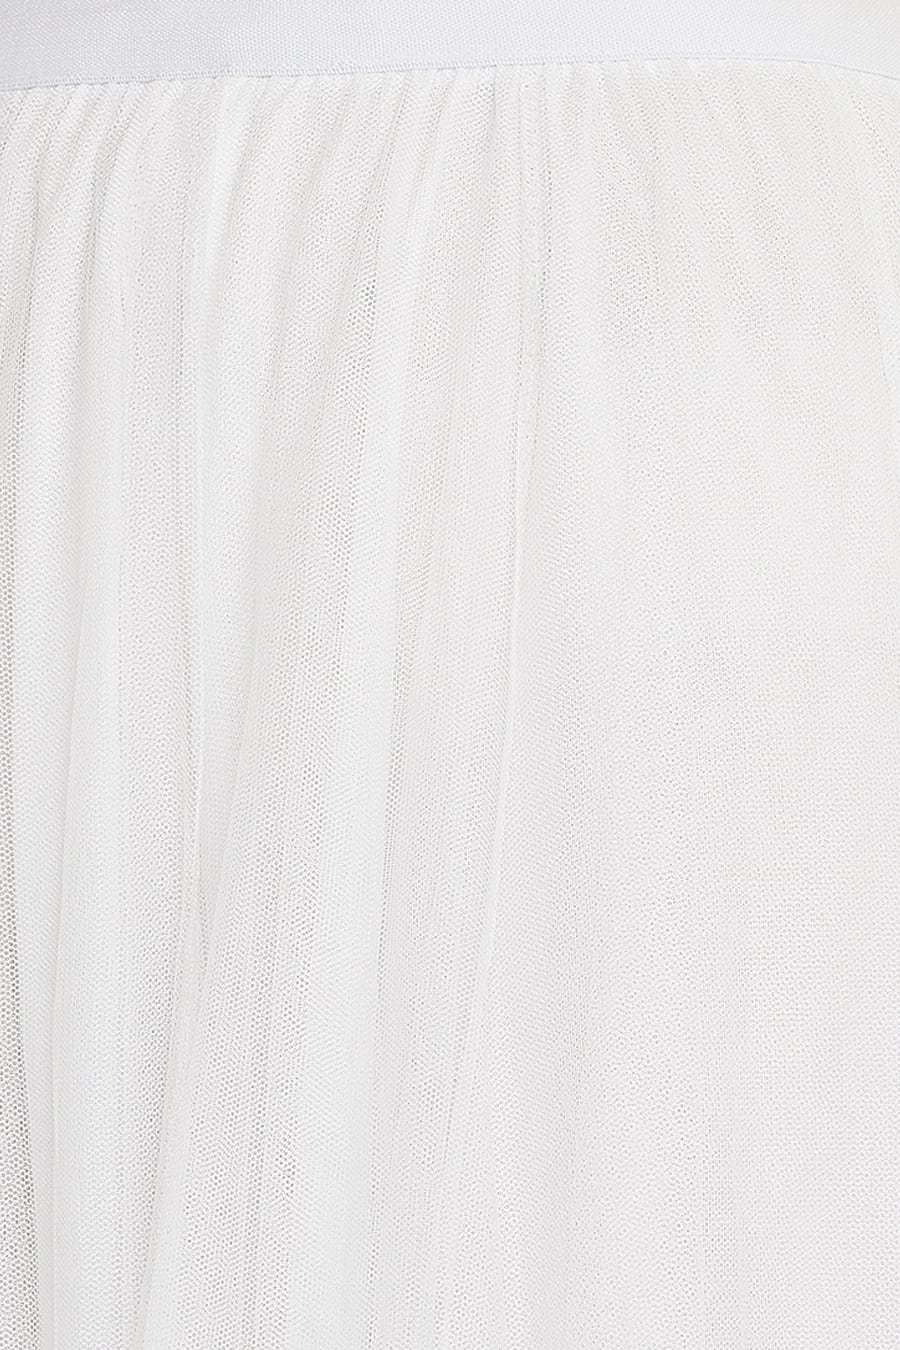 White net pleated skirt – Kovet Invogue